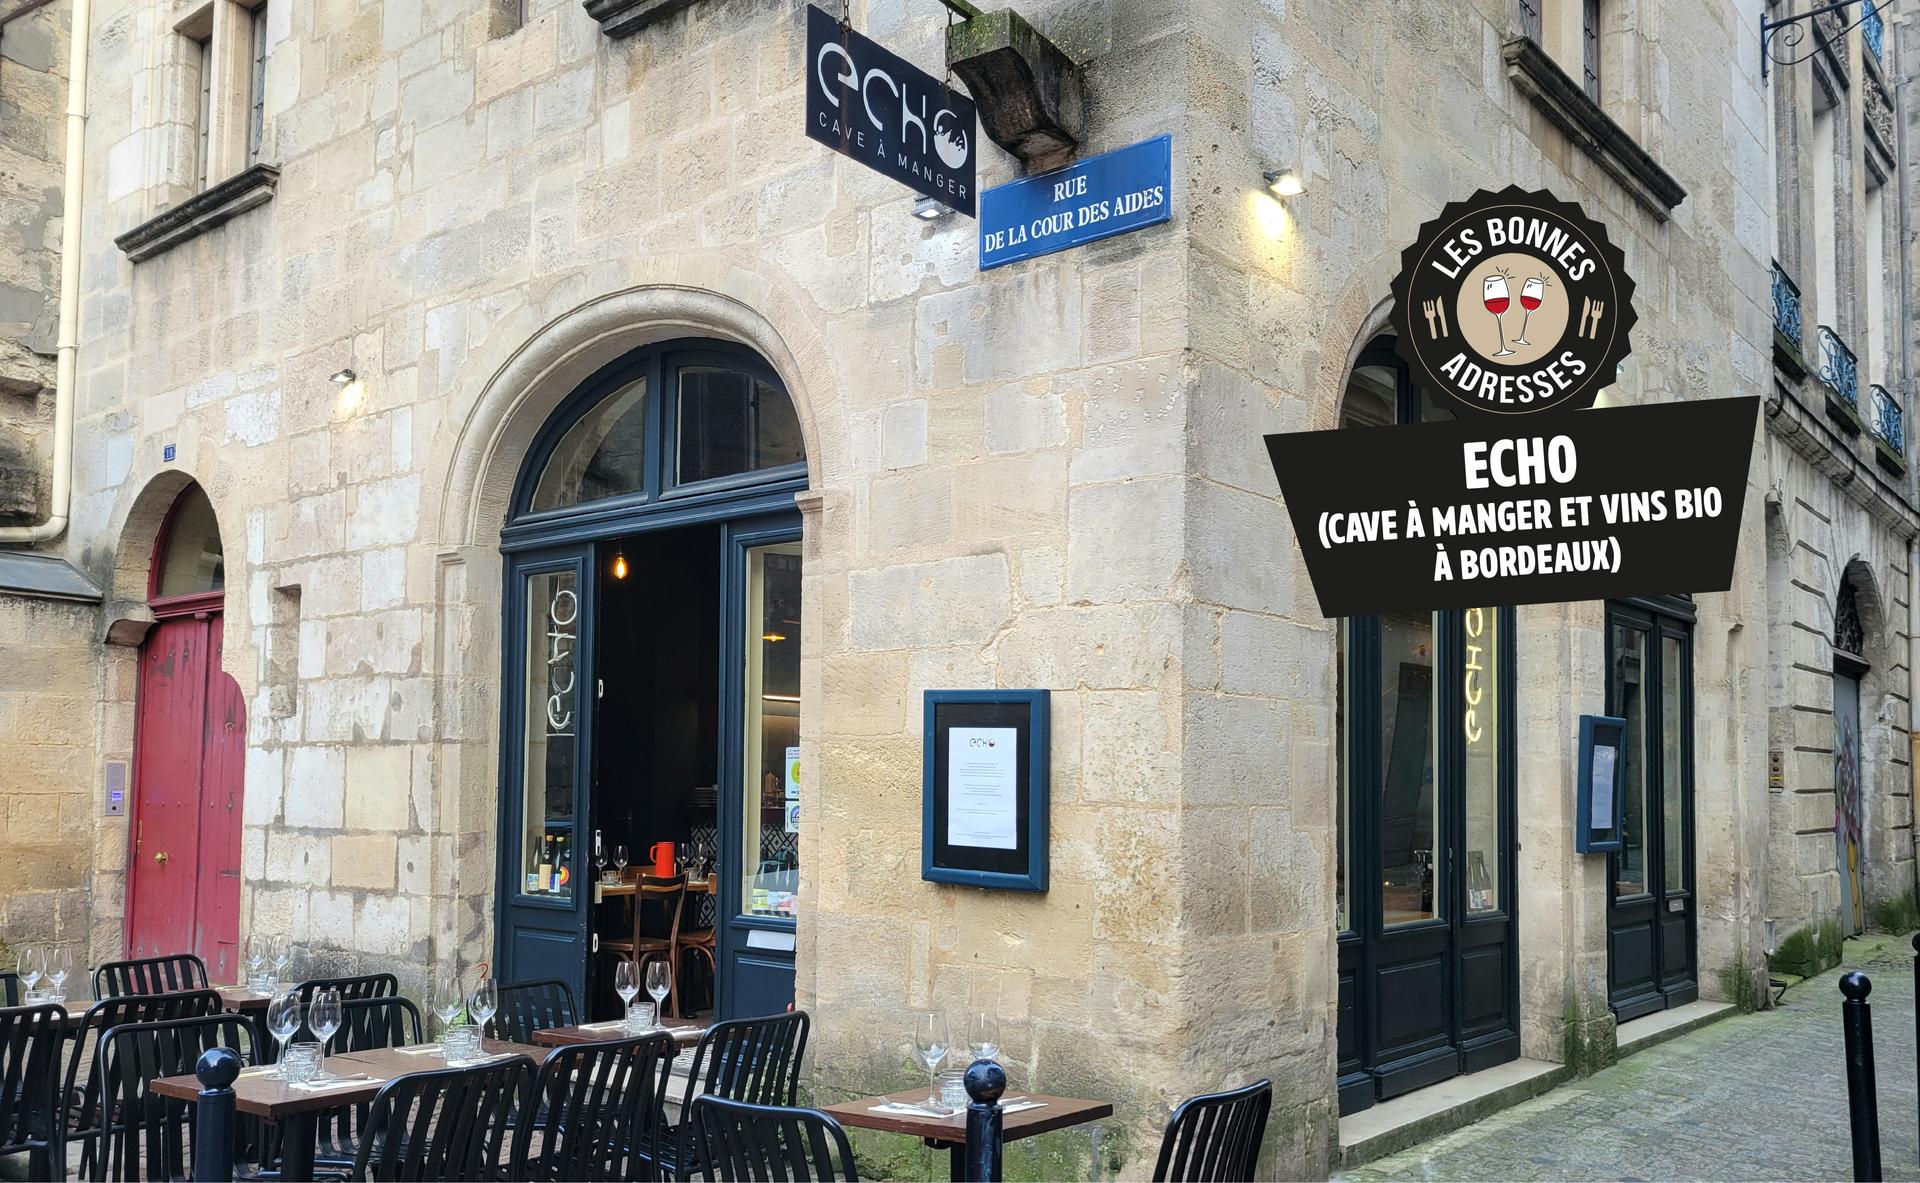 Echo : cave à manger et vins bio à Bordeaux